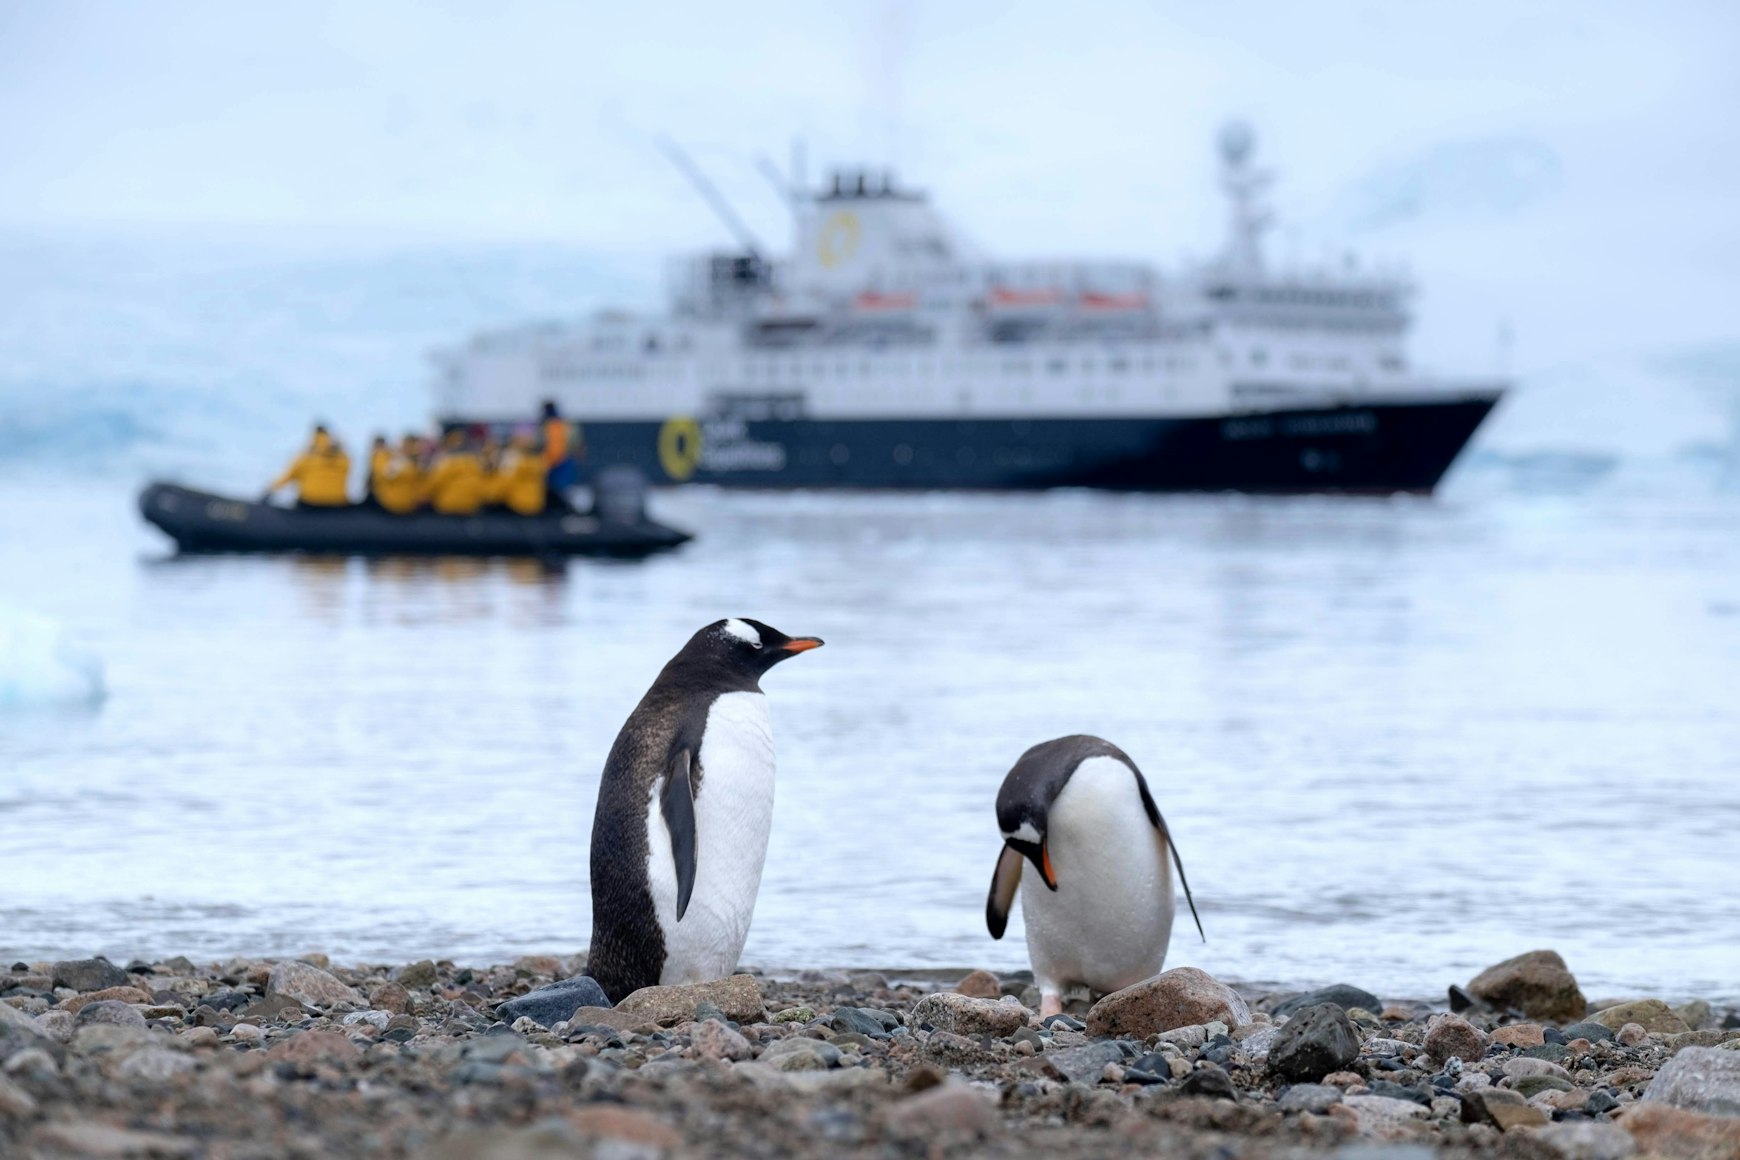 Penguins in arctic